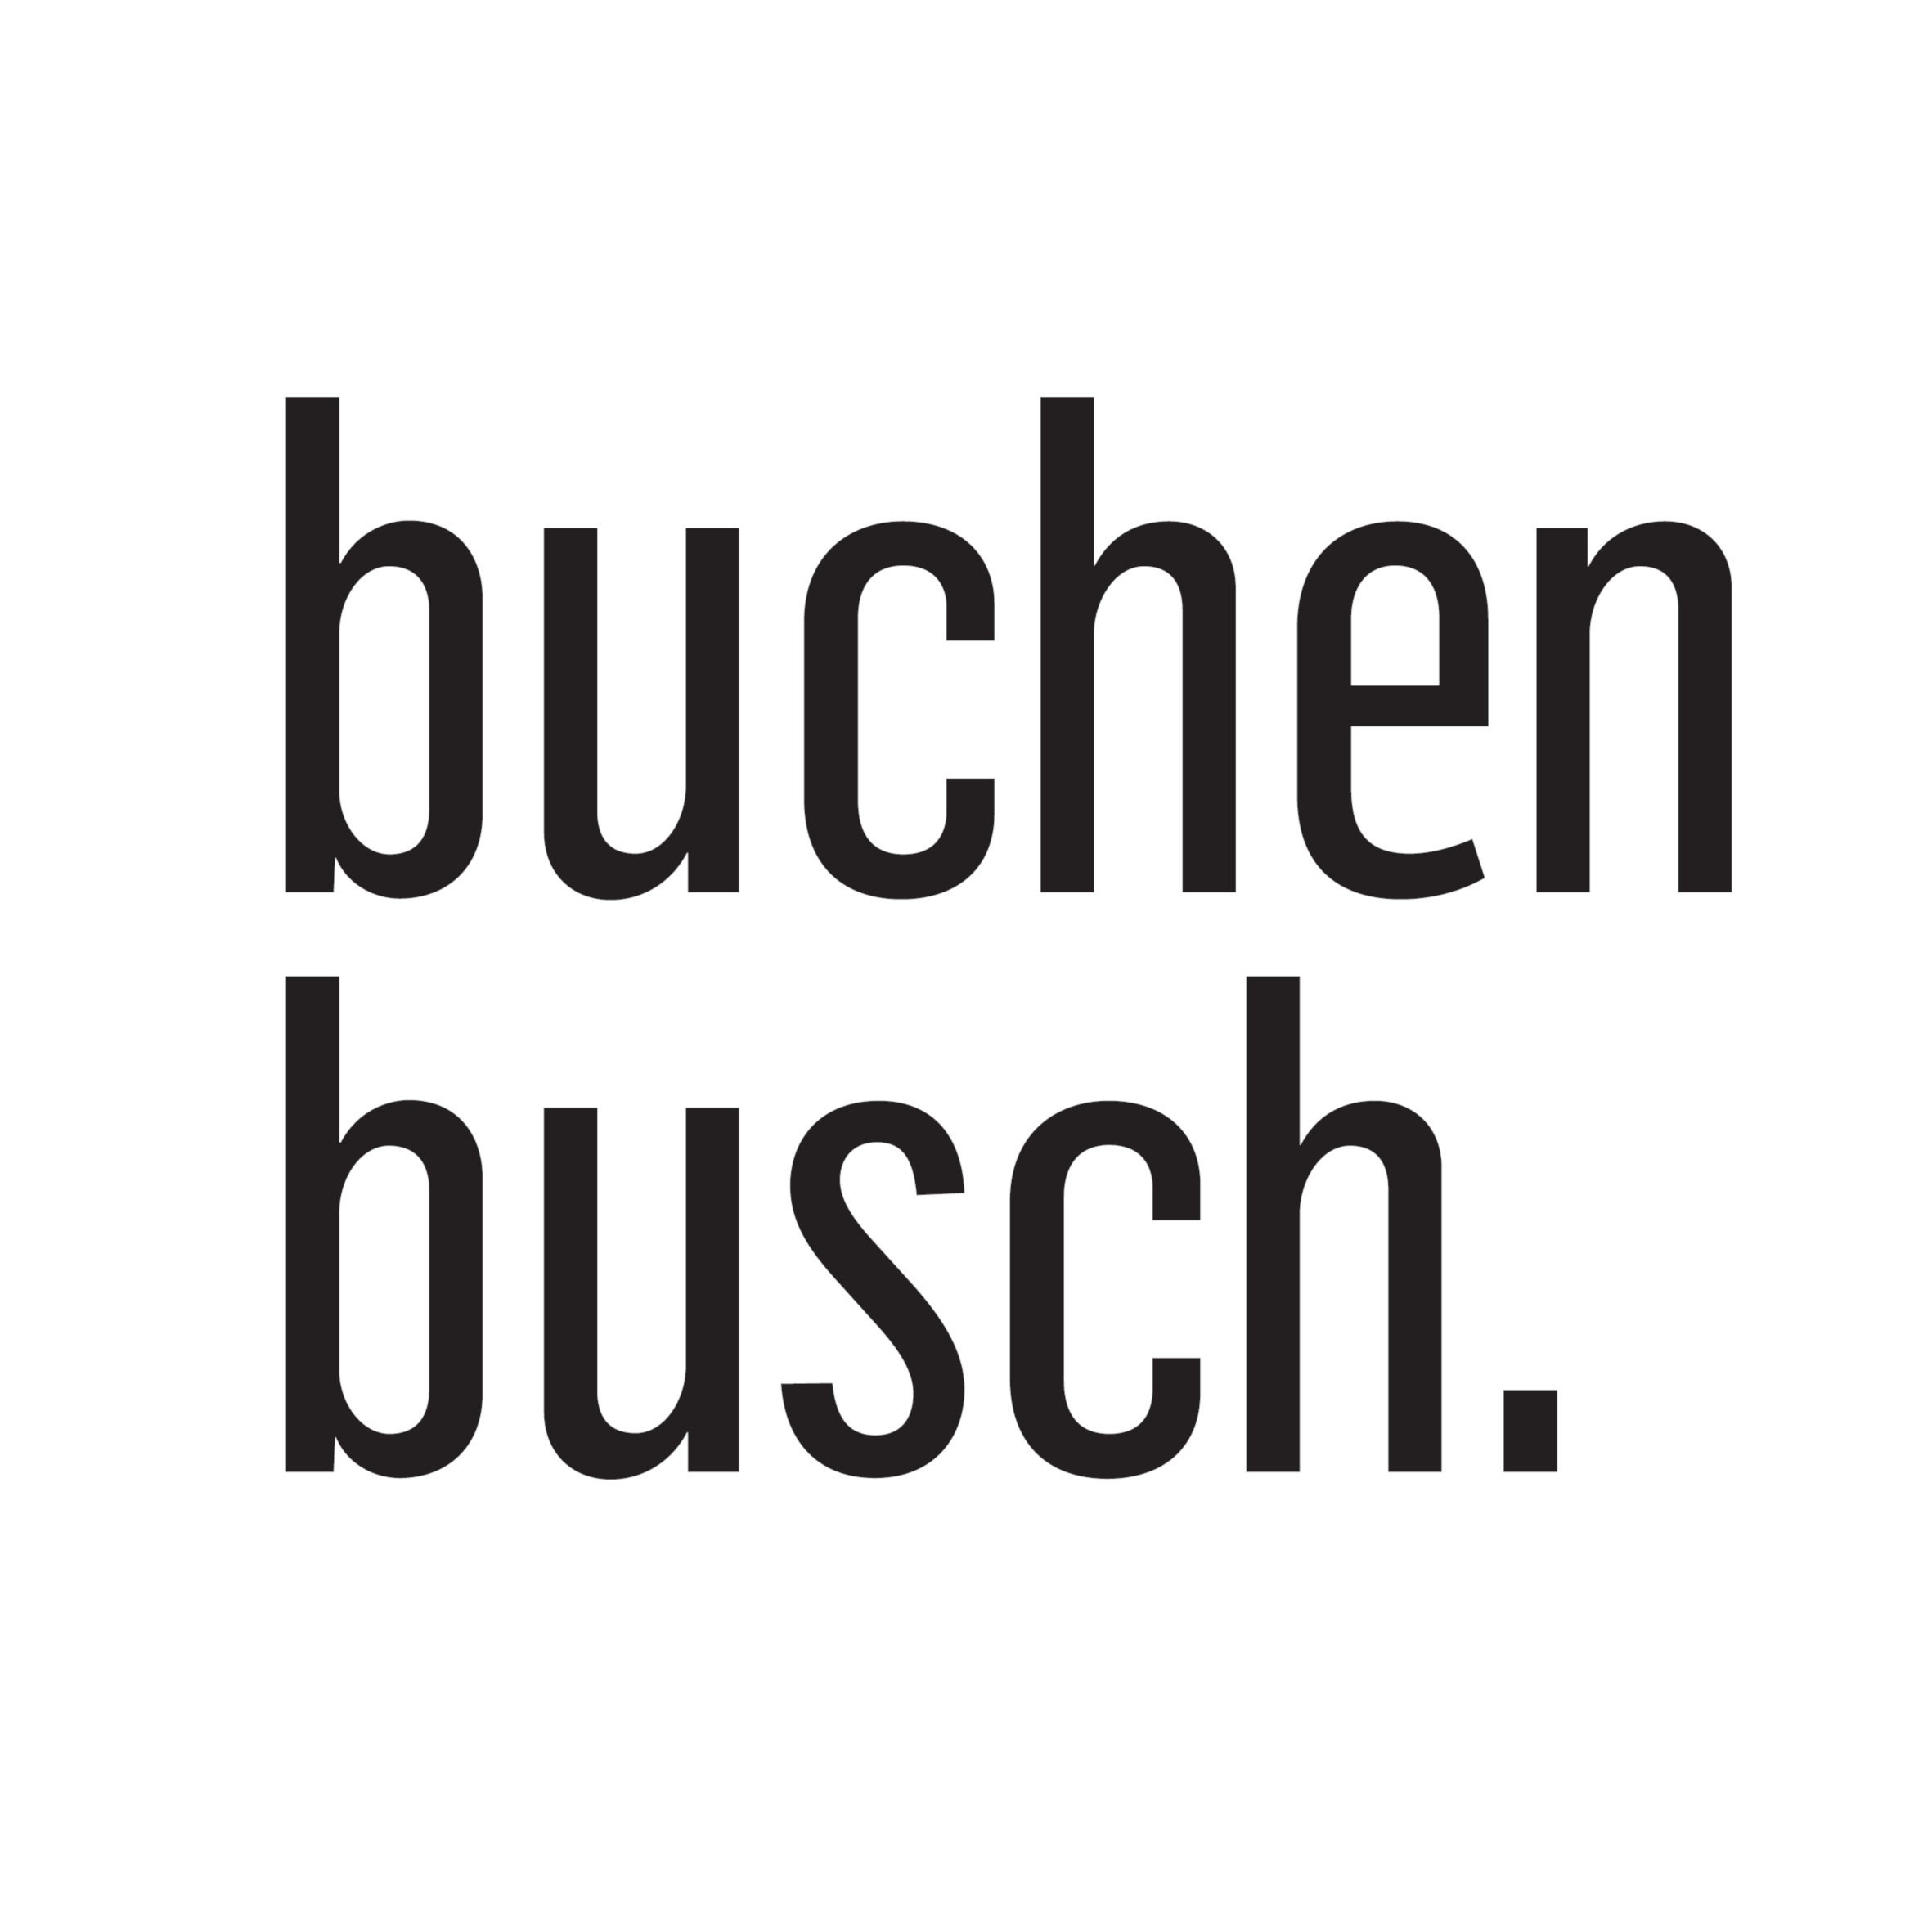 Buchenbusch urban design Schlüsselbrett mit Ablage aus Beton Dark Edition  33x6x5 cm, Schlüsselboard Wand, Schlüsselaufbewahrung Flur, Grau